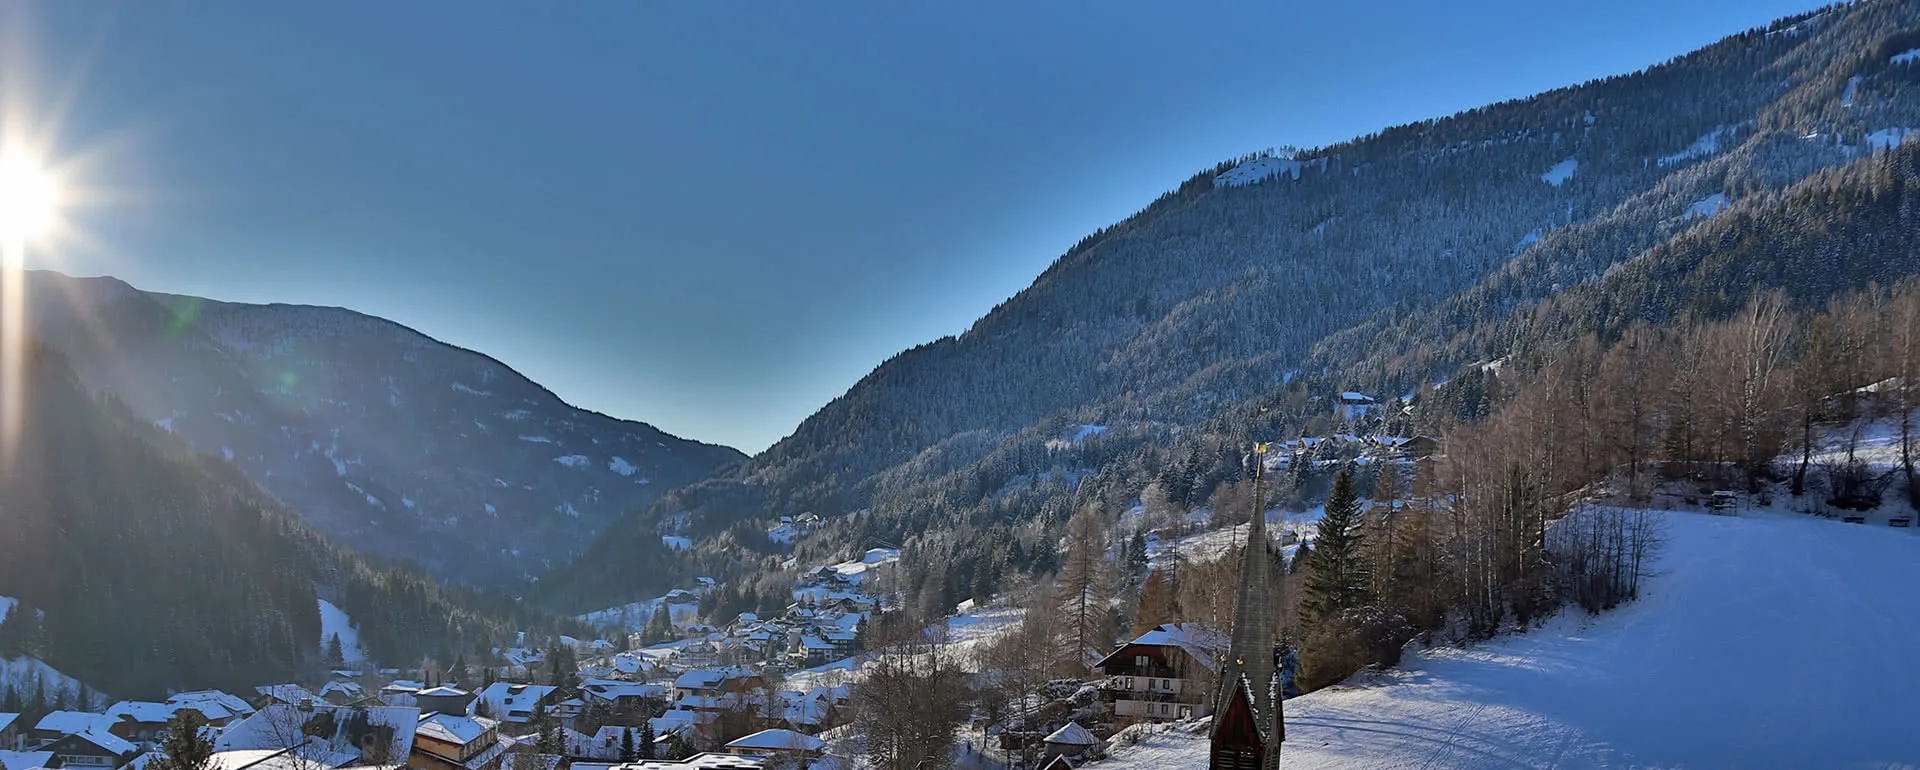 Bad Kleinkirchheim panorama image